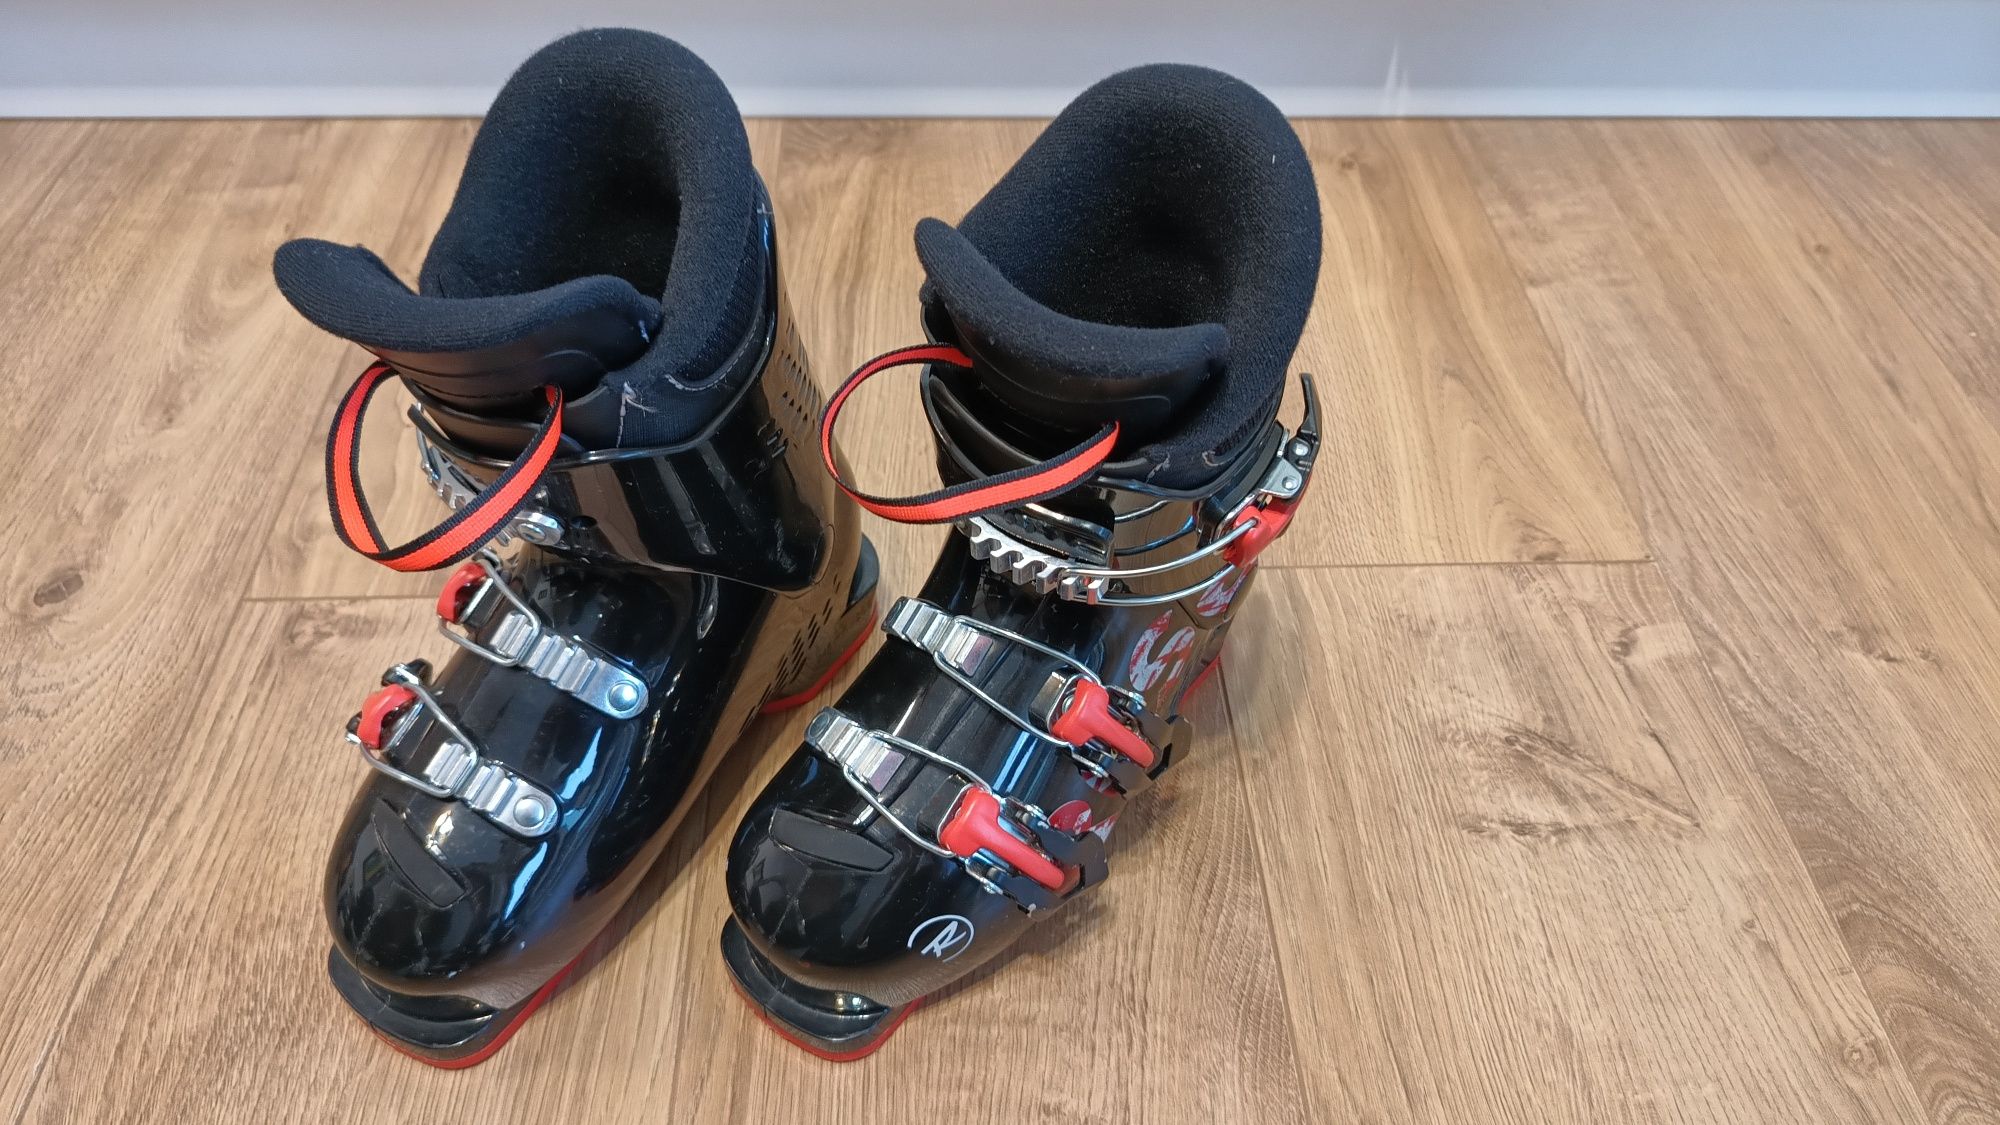 Buty narciarskie Rossignol COMP J3 dziecięce, rozmiar 20,5 cm